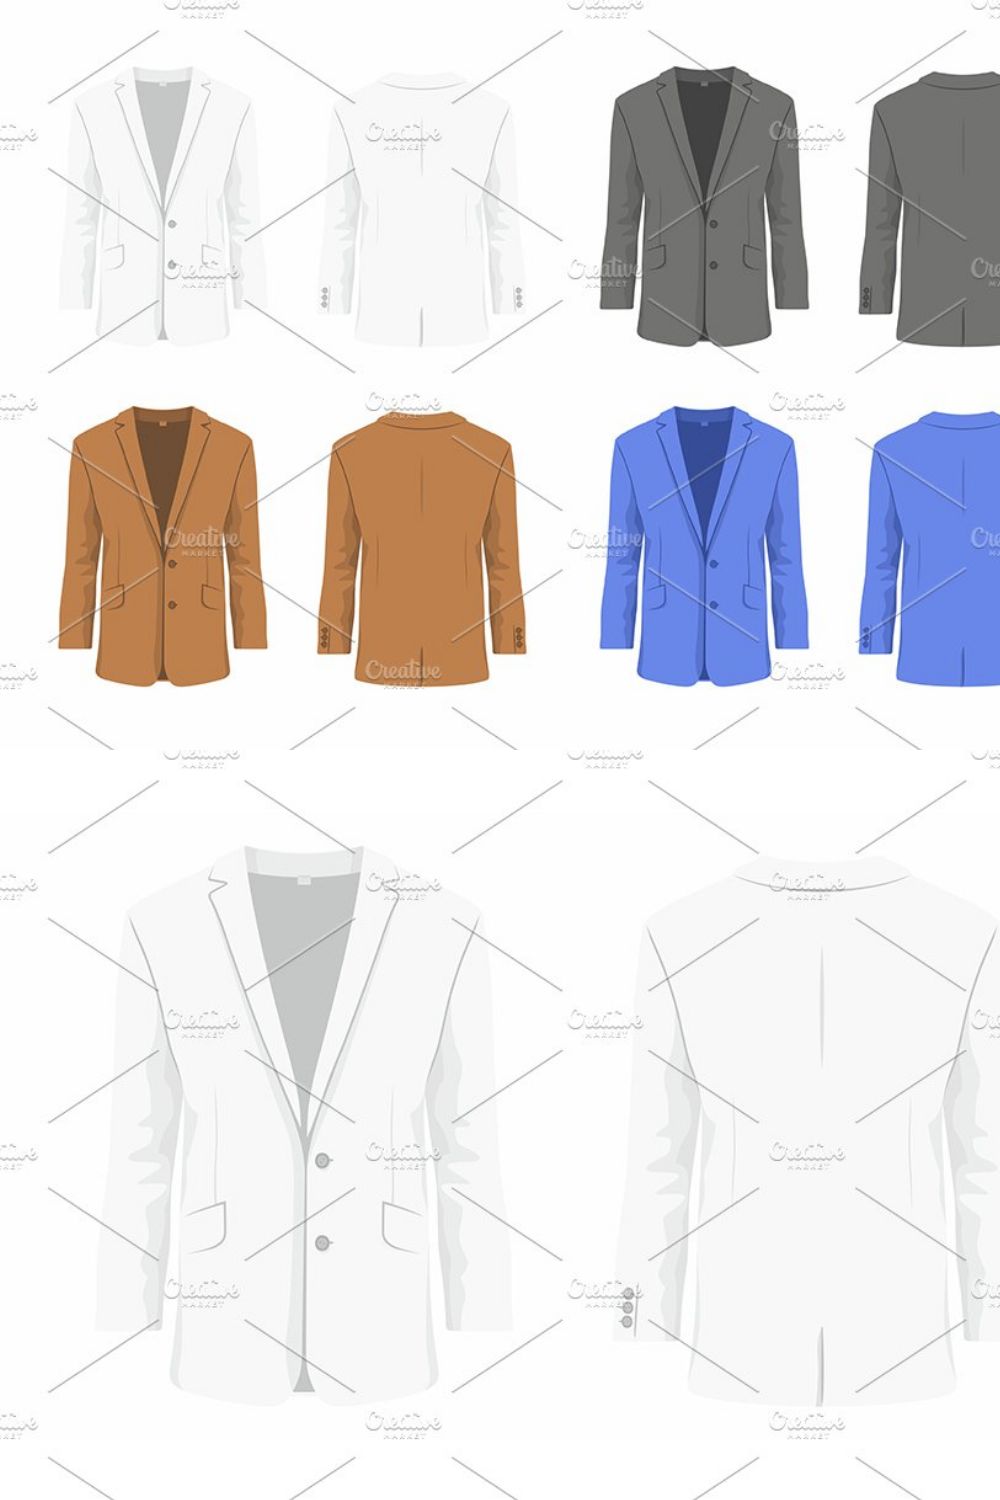 Men's business suit pinterest preview image.